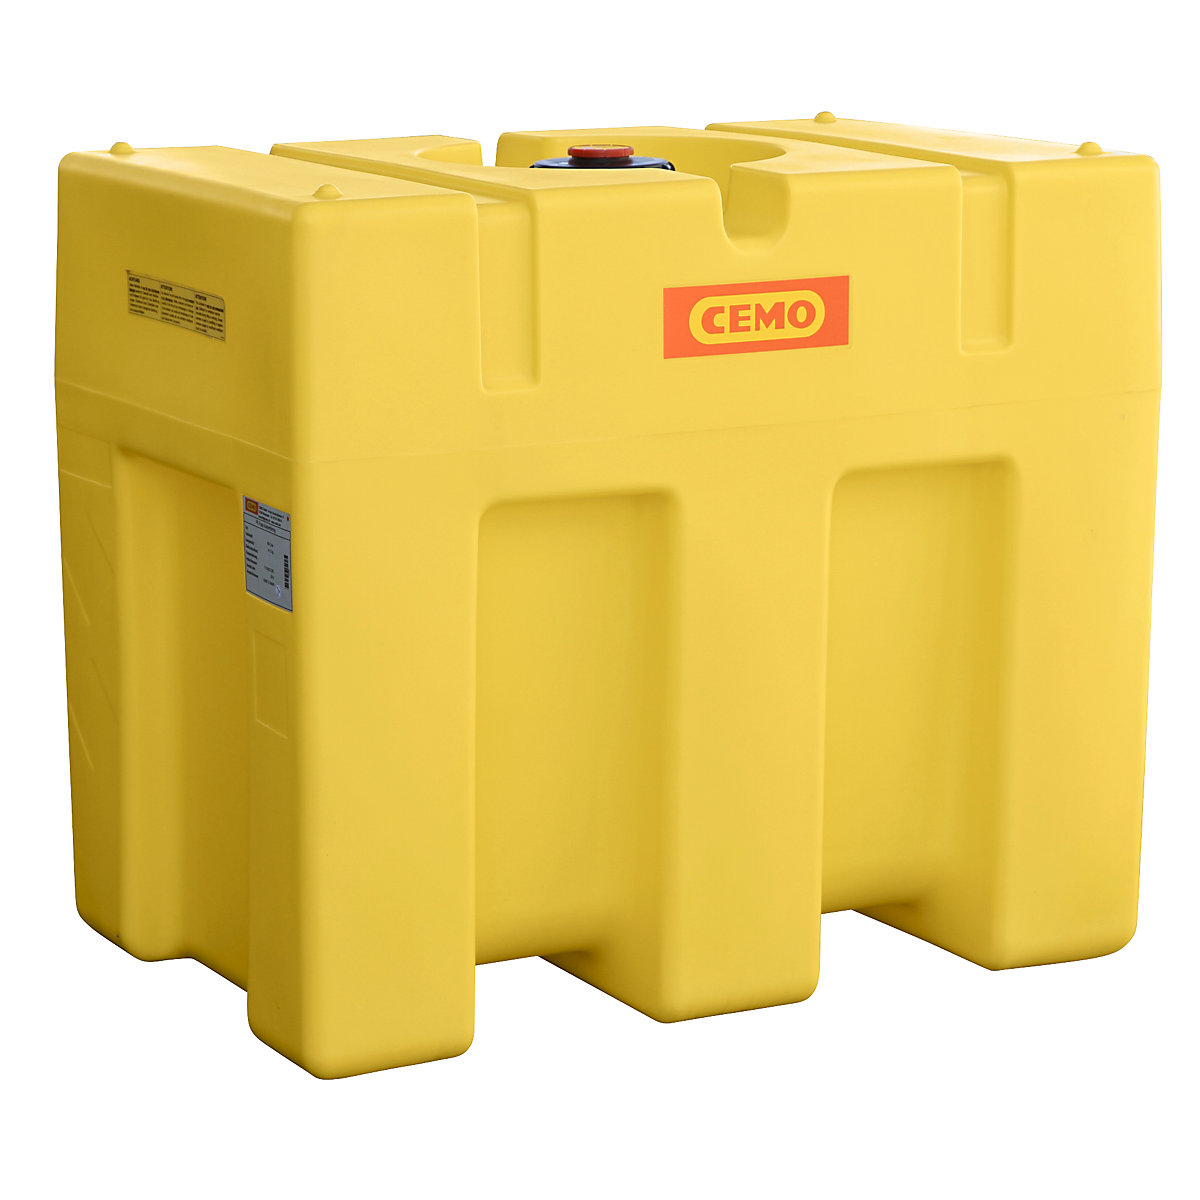 PE víztároló hordó – CEMO, doboz alakú, sárga, térfogat 600 l-3